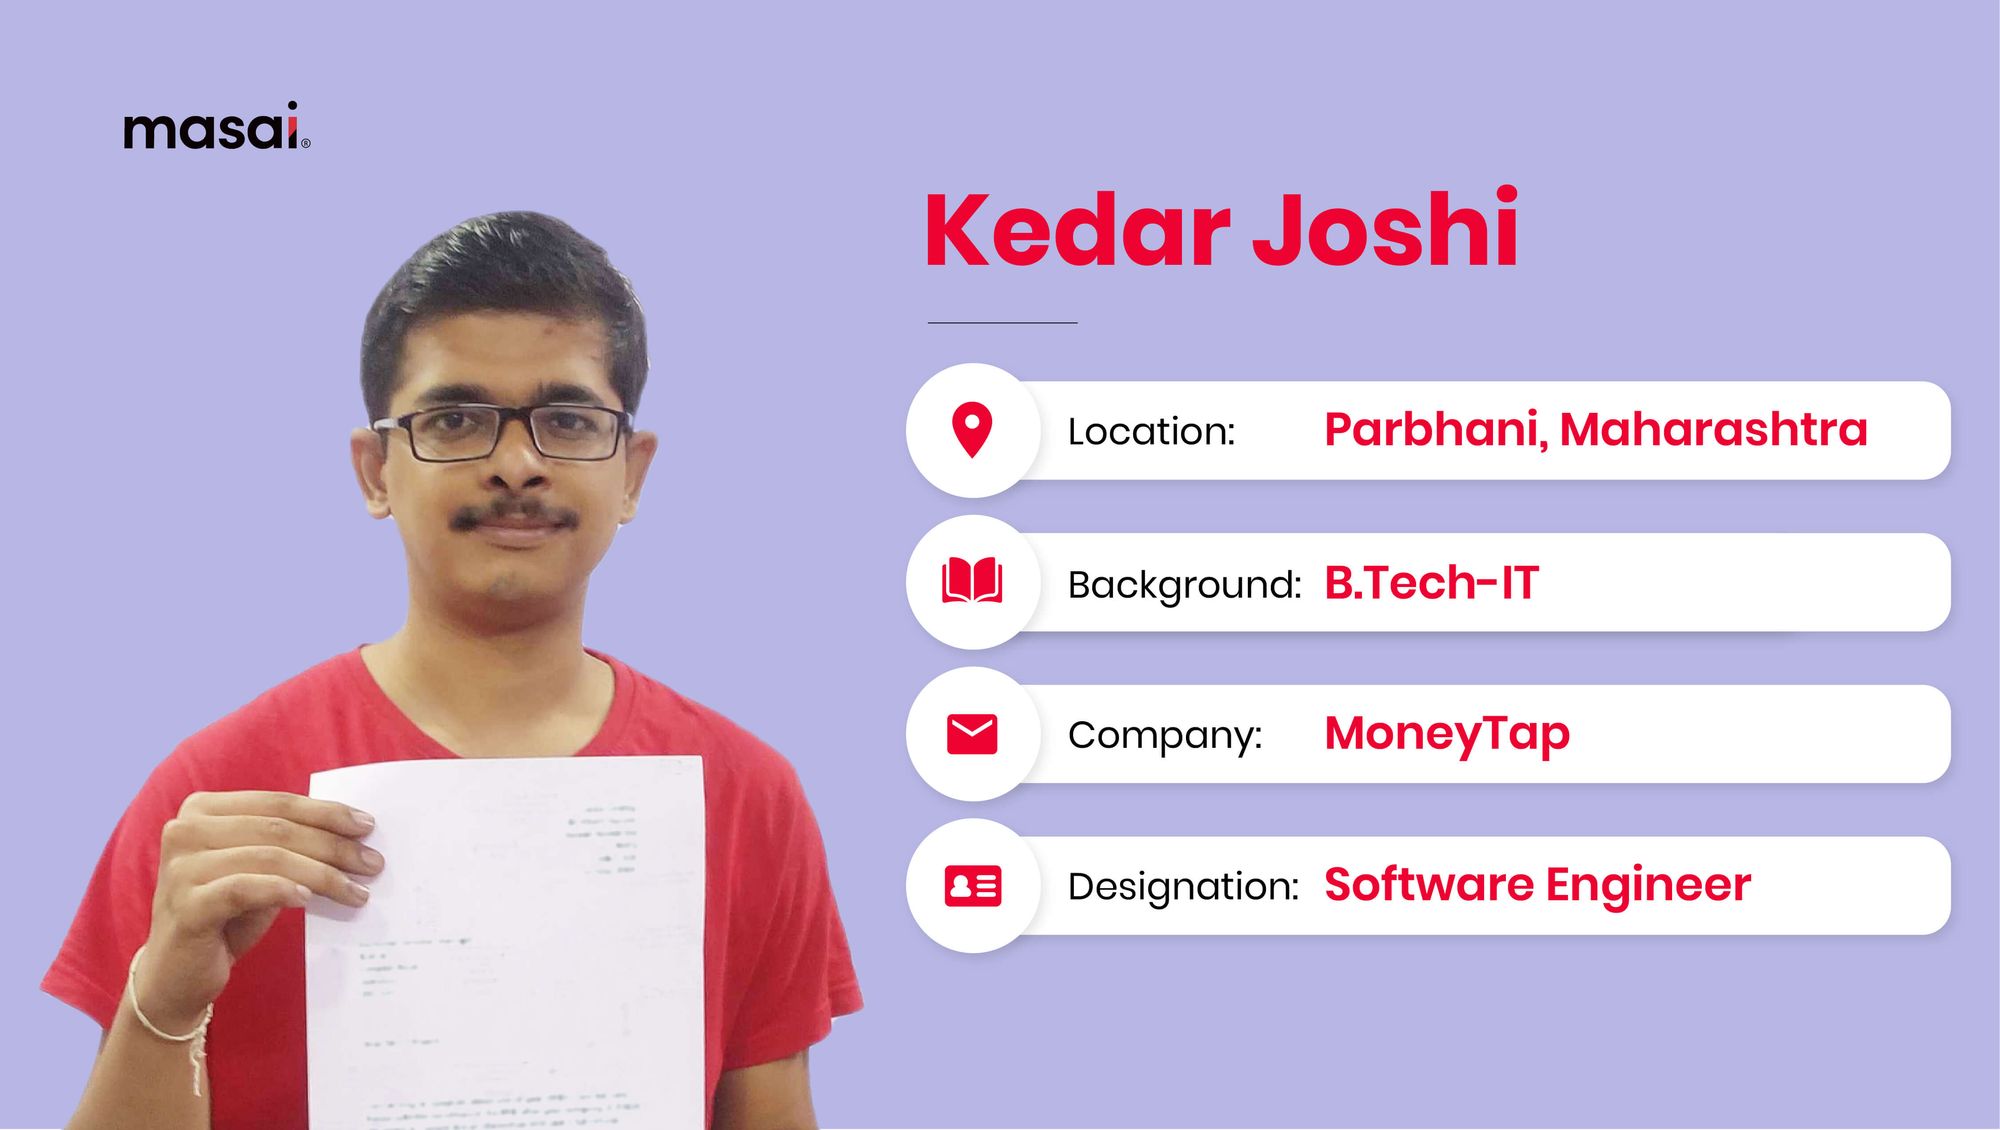 Kedar Joshi- A Masai graduate now working at MoneyTap